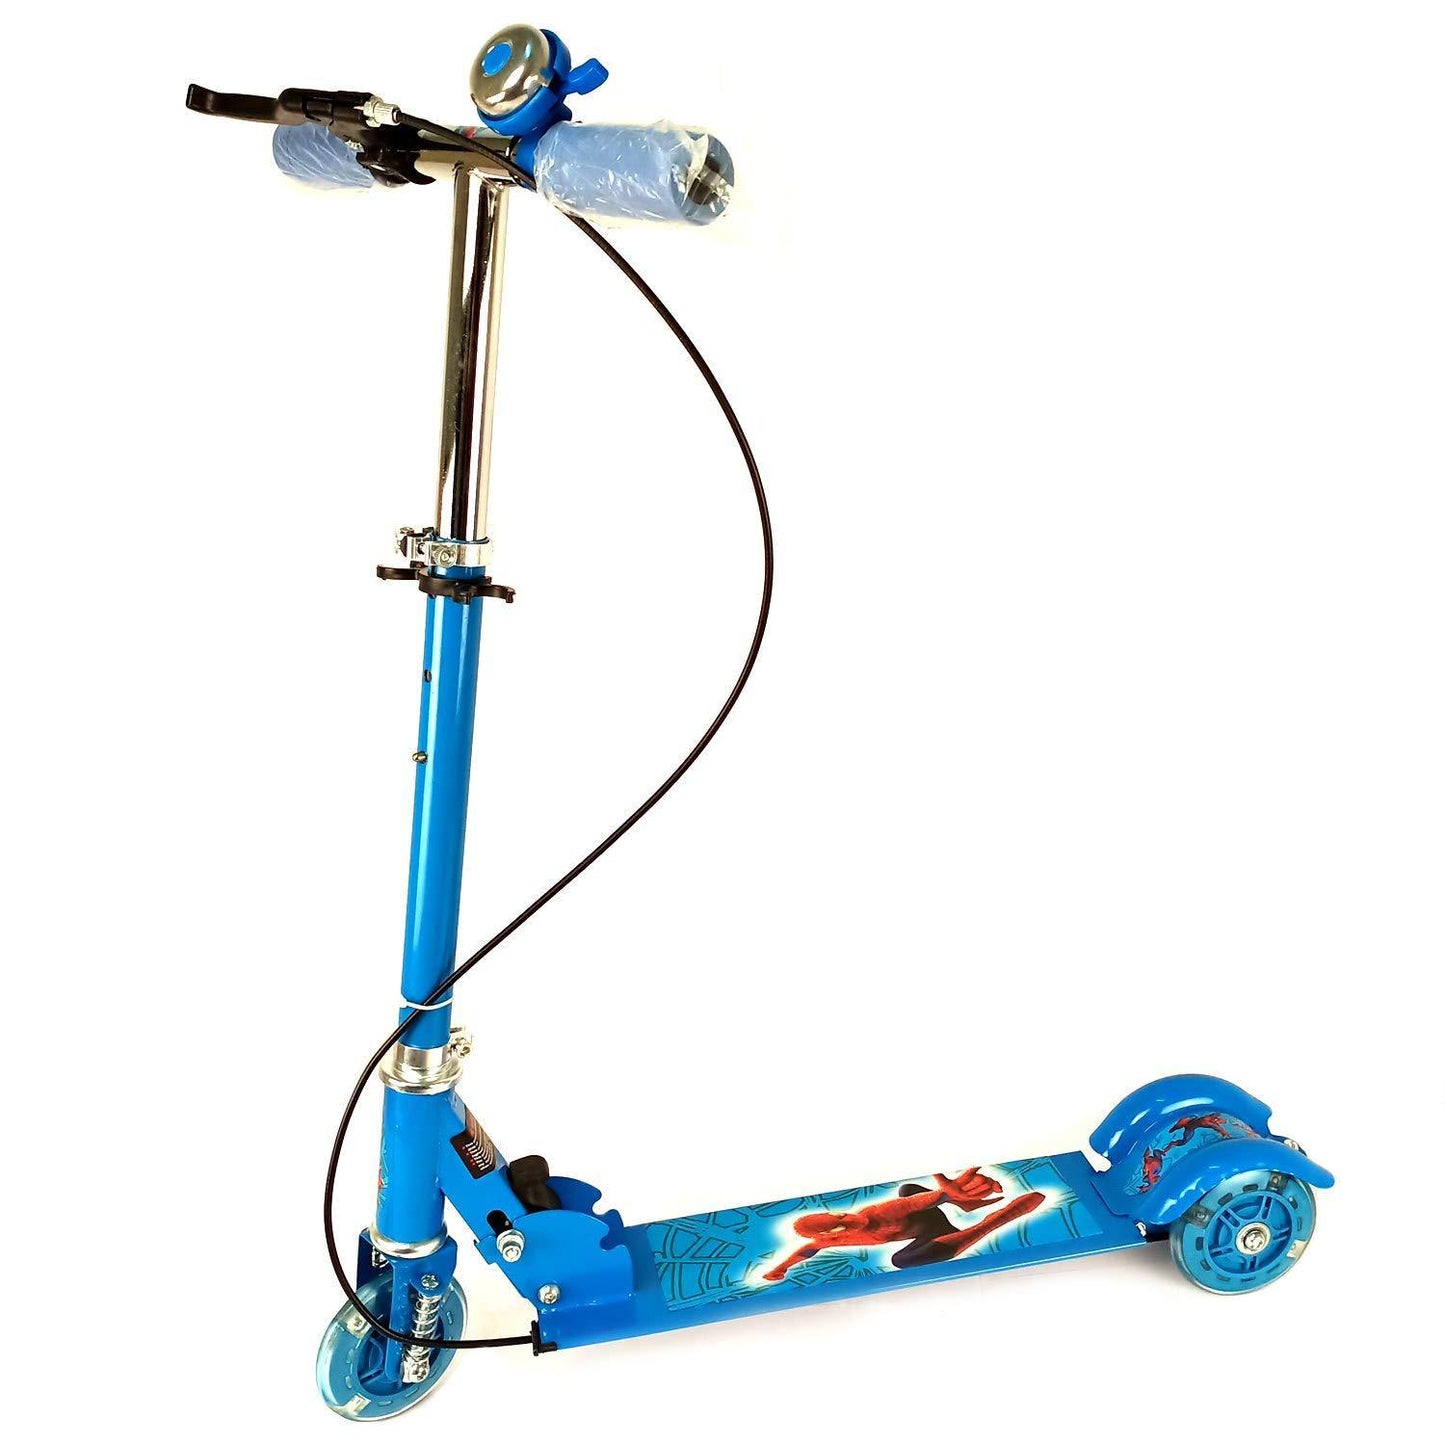 Prokick 3-Wheeler (Led Light) Road Runner Scooter for Kids- Blue - Best Price online Prokicksports.com